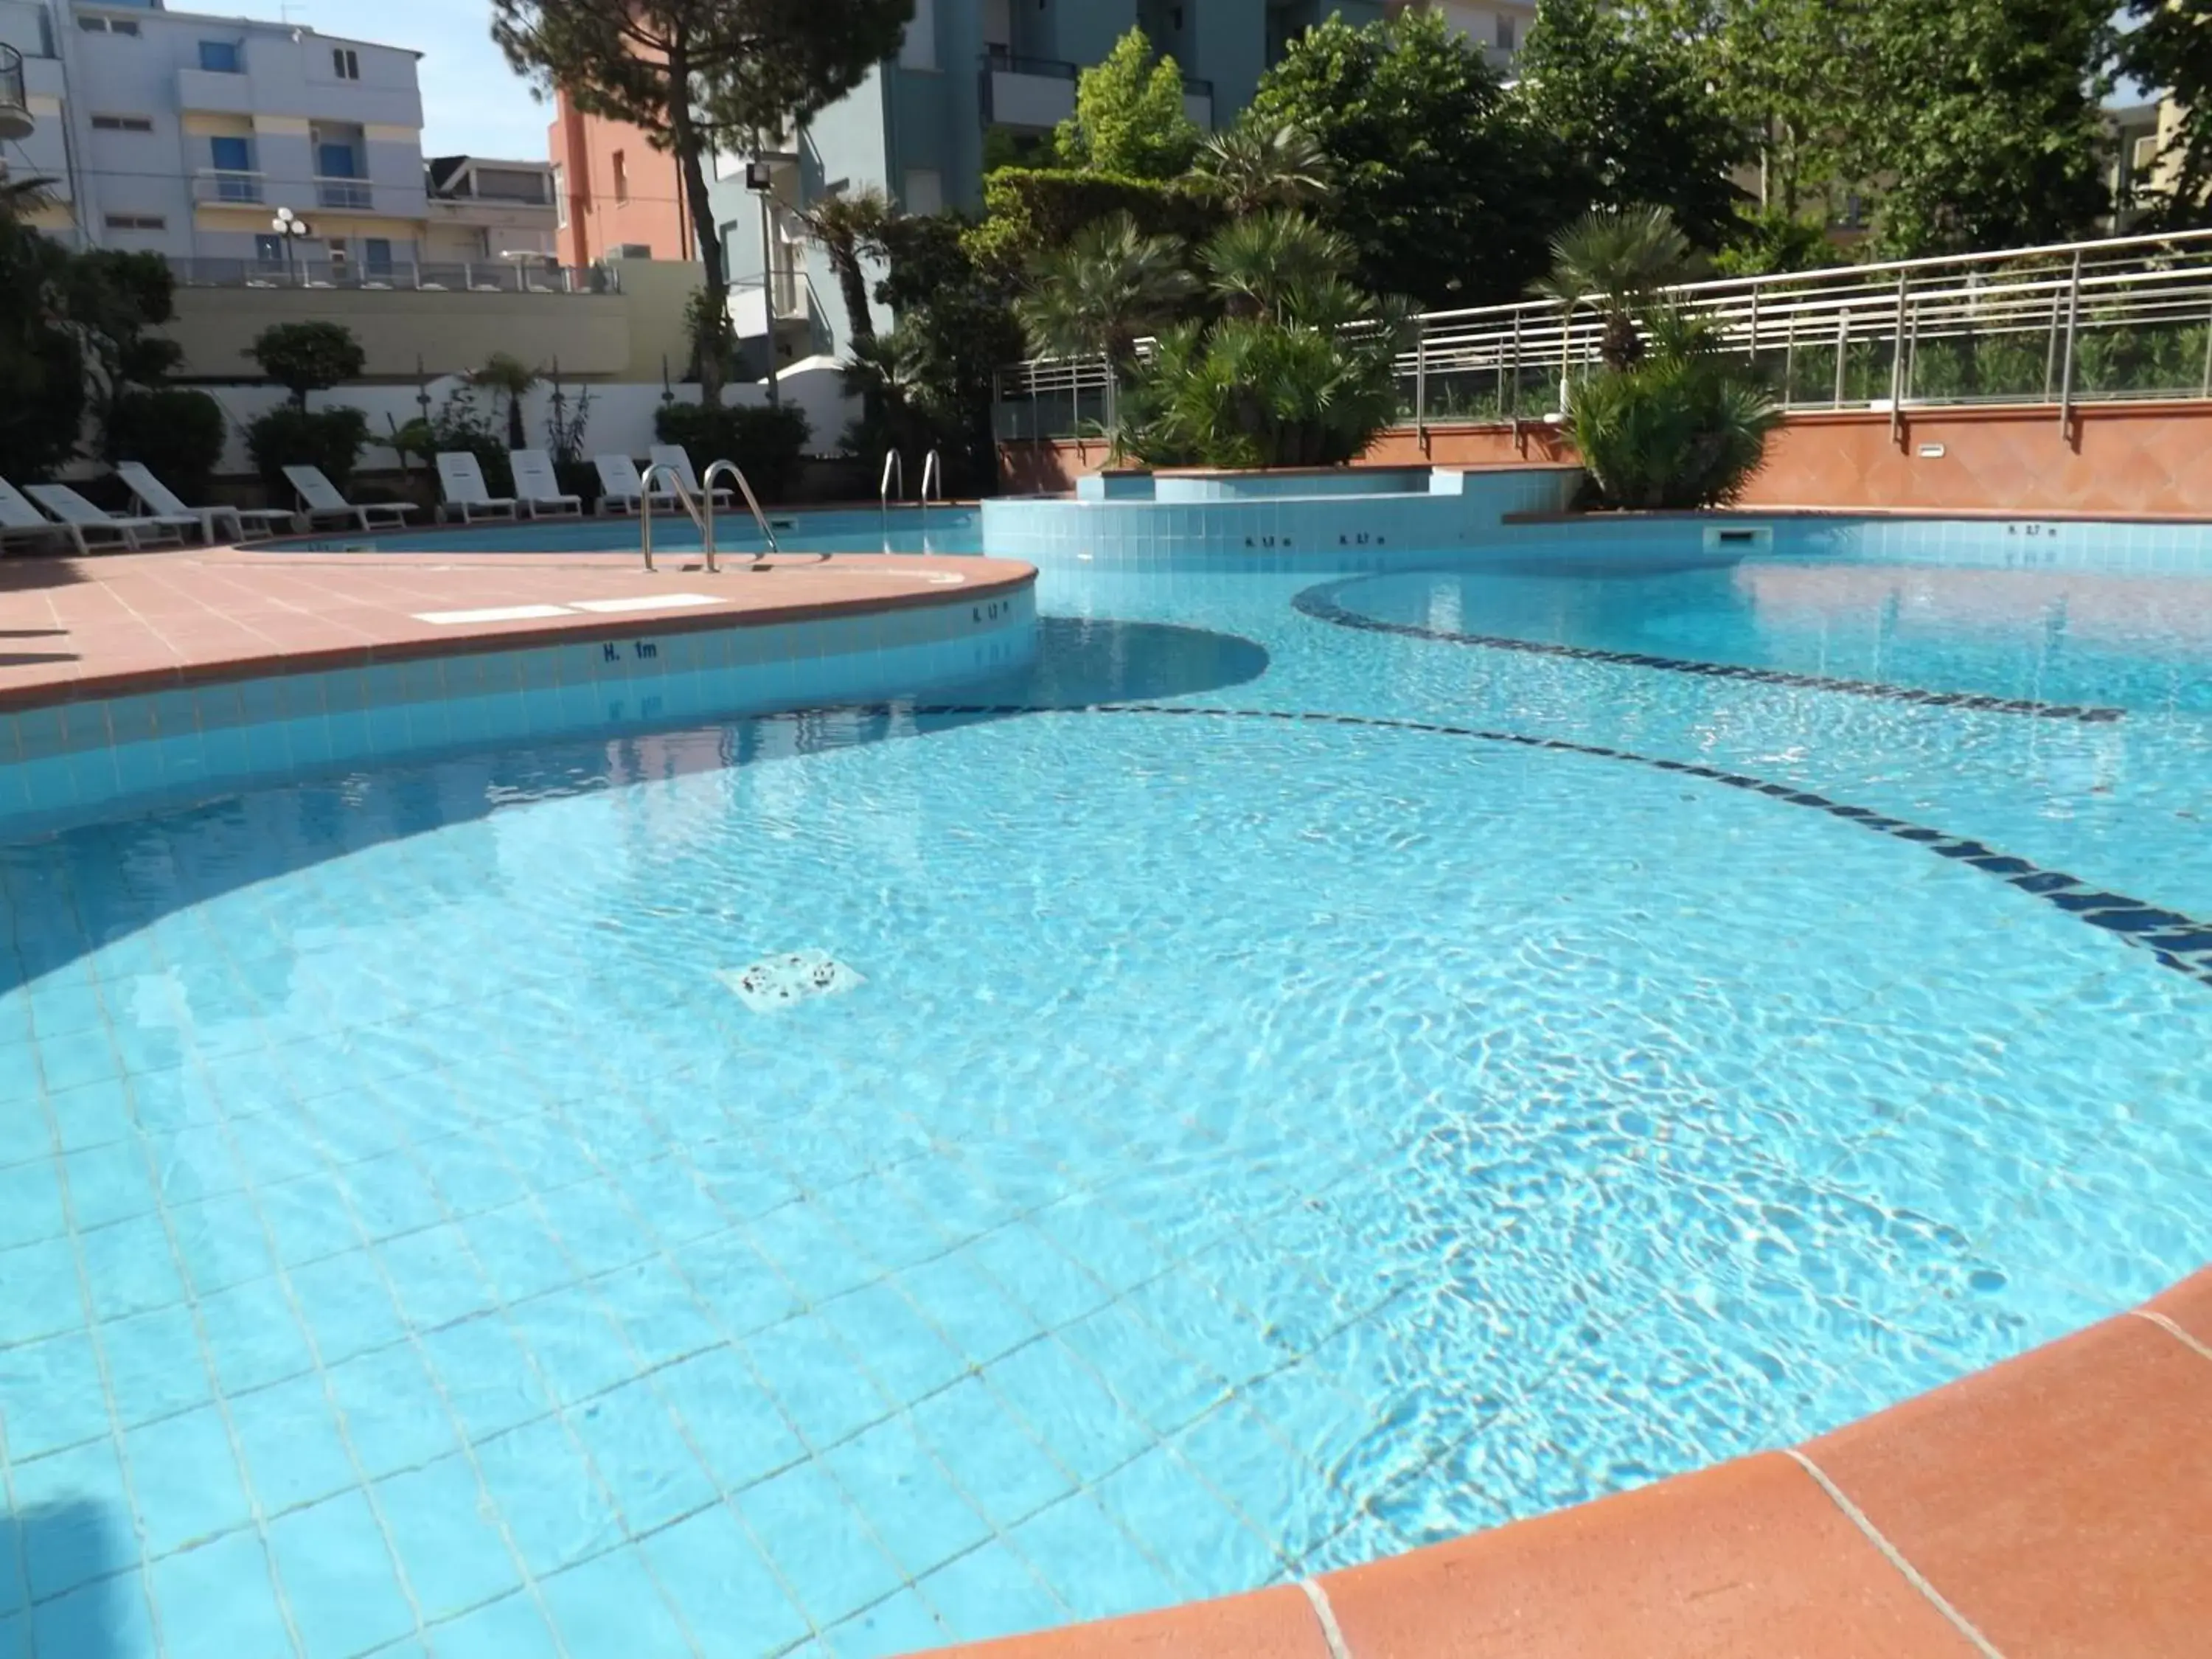 Swimming Pool in San Giorgio Savoia